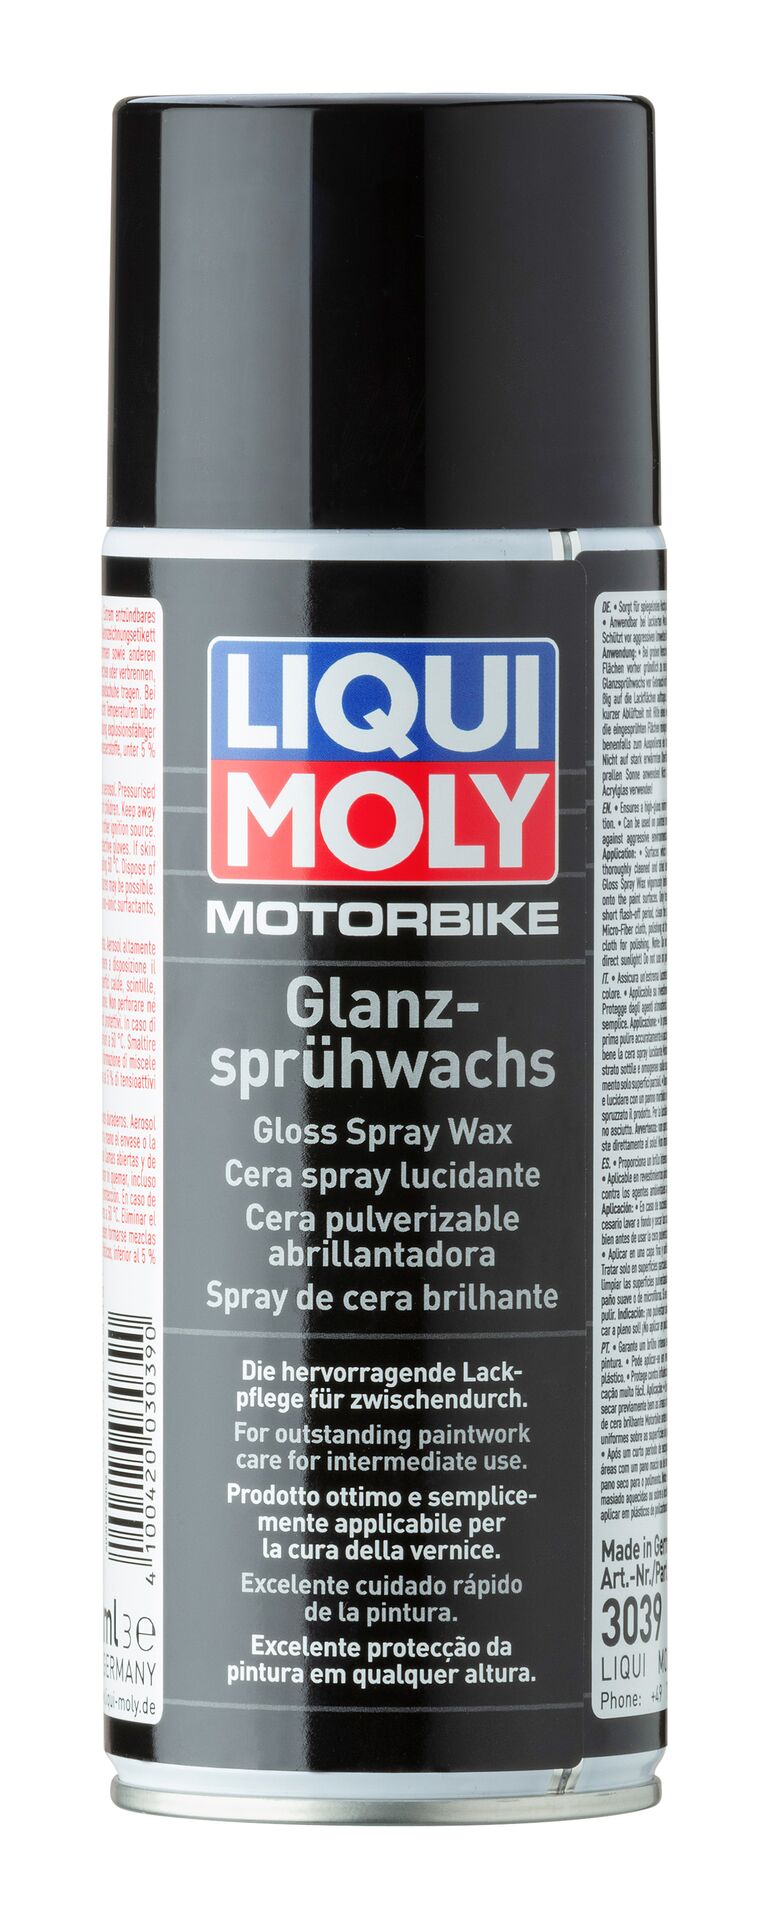 LIQUI MOLY Motorbike Glanz-Sprühwachs Gloss Spray Wax Dose Aerosol 400 ml